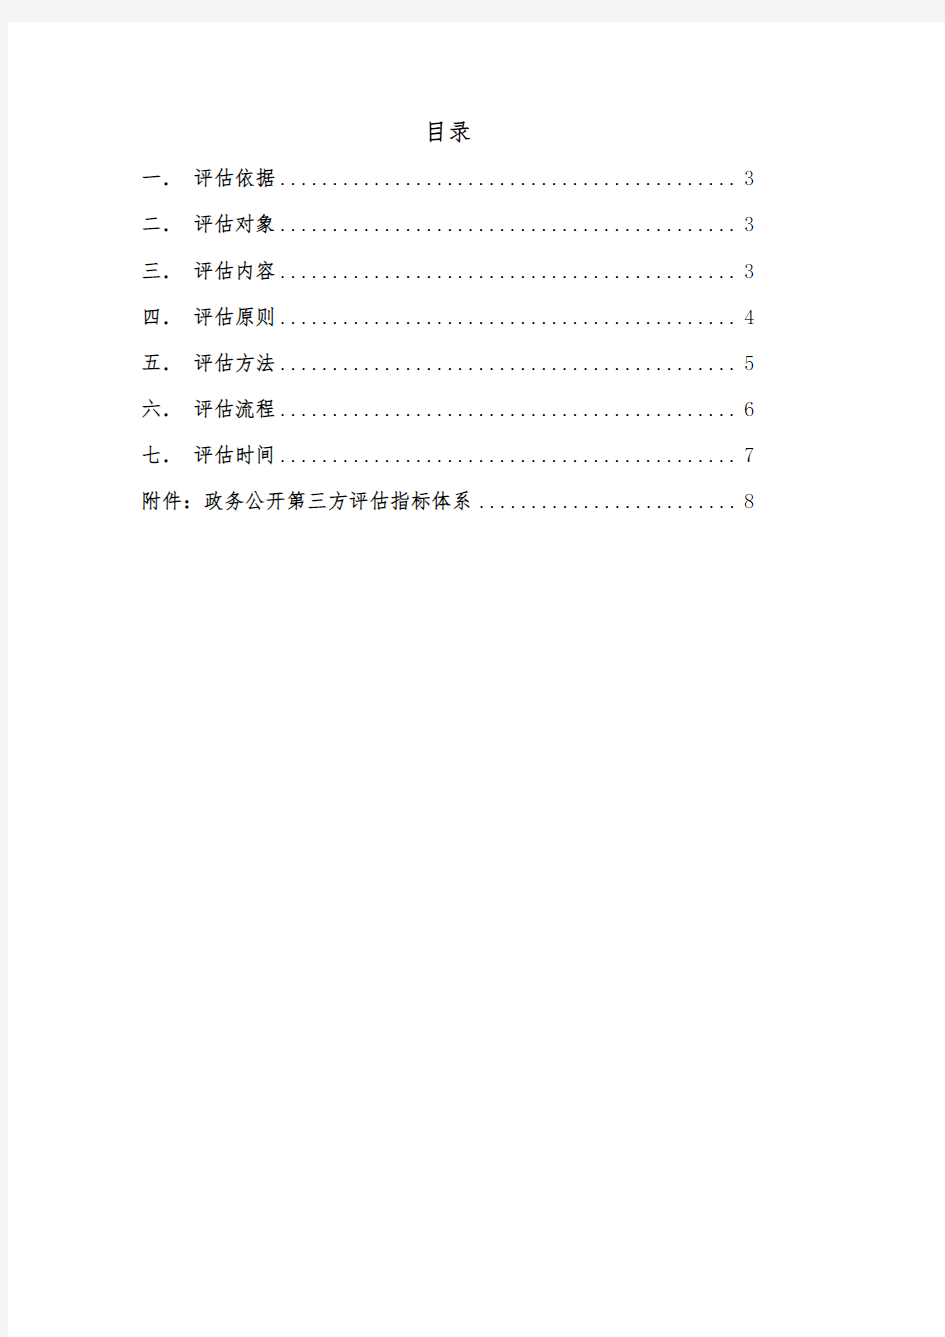 临沂市政务公开第三方评估实施方案-Linyi